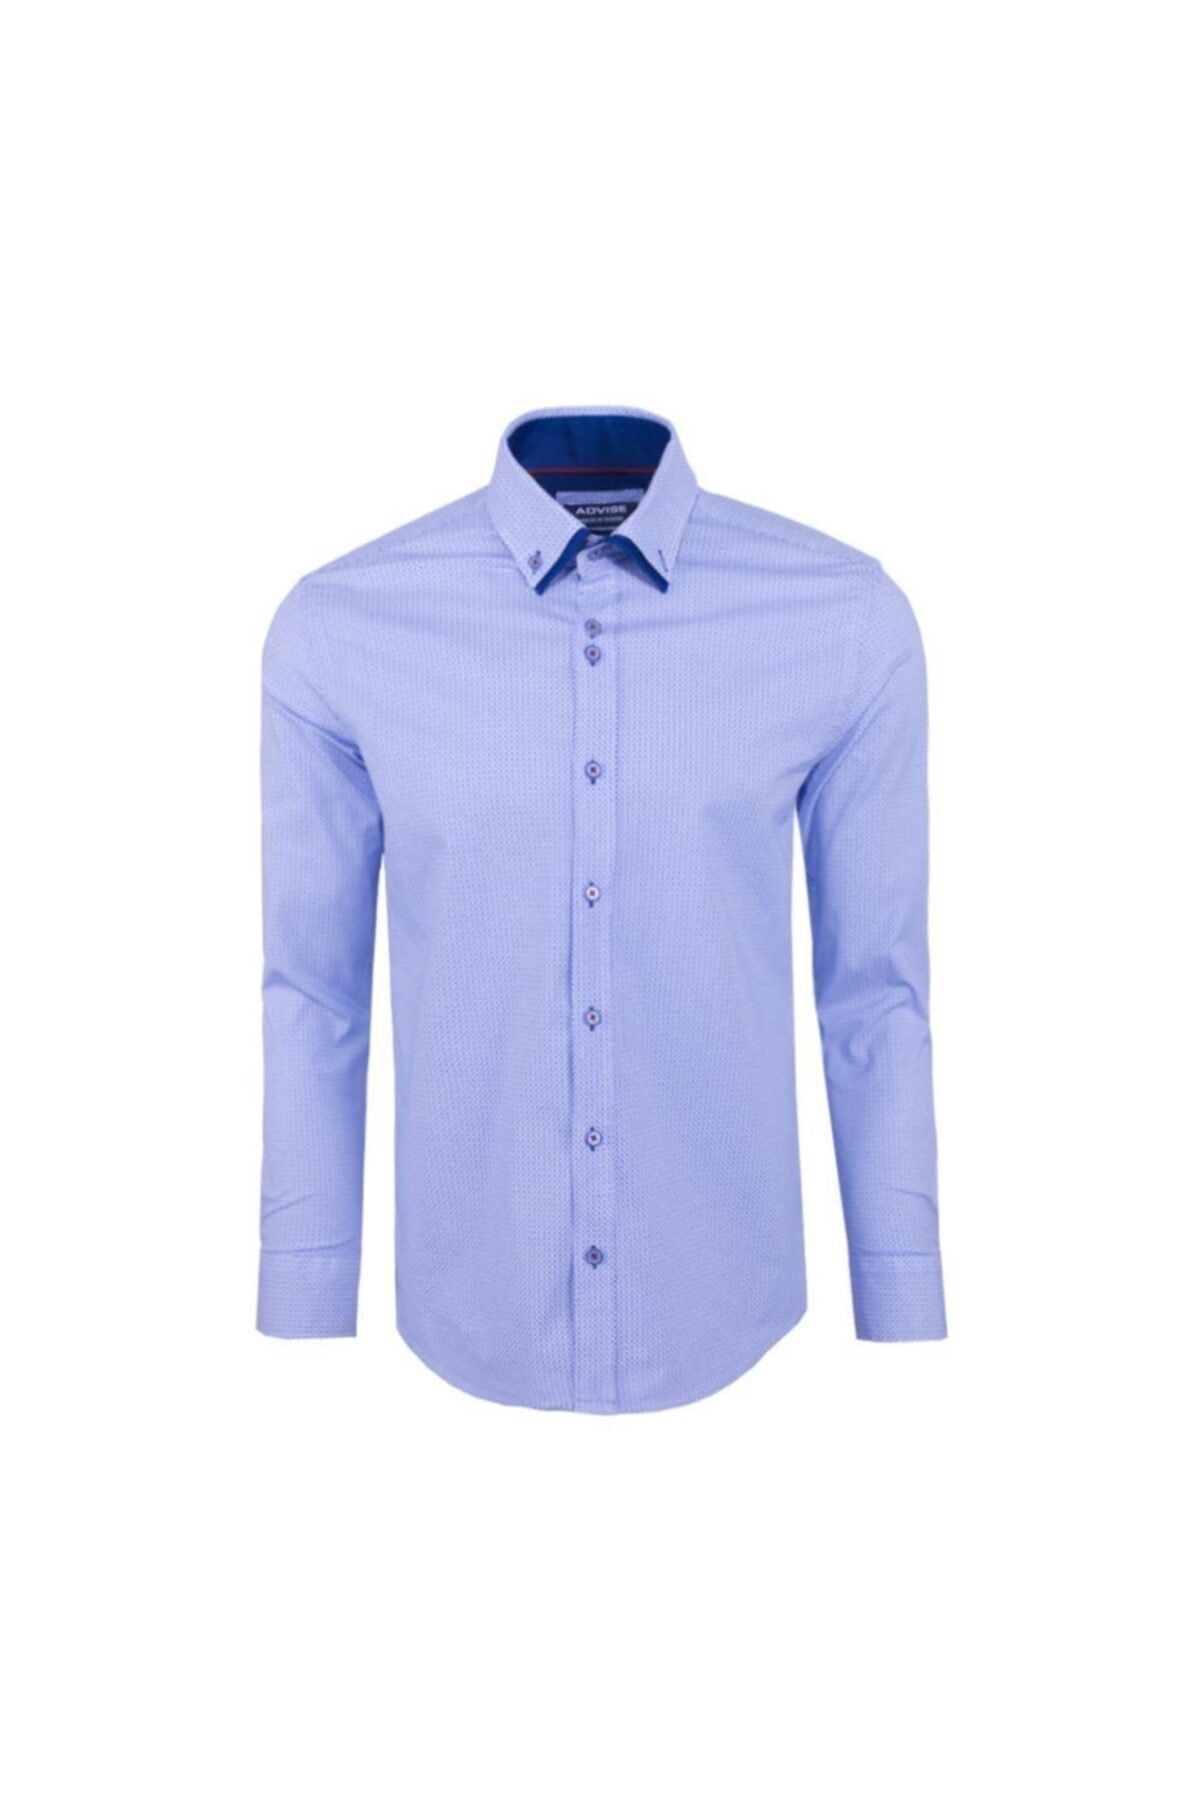 Ottomoda Erkek Beyaz-mavi Baskılı Uzun Kollu Likralı Gömlek, Ad-cl-20110